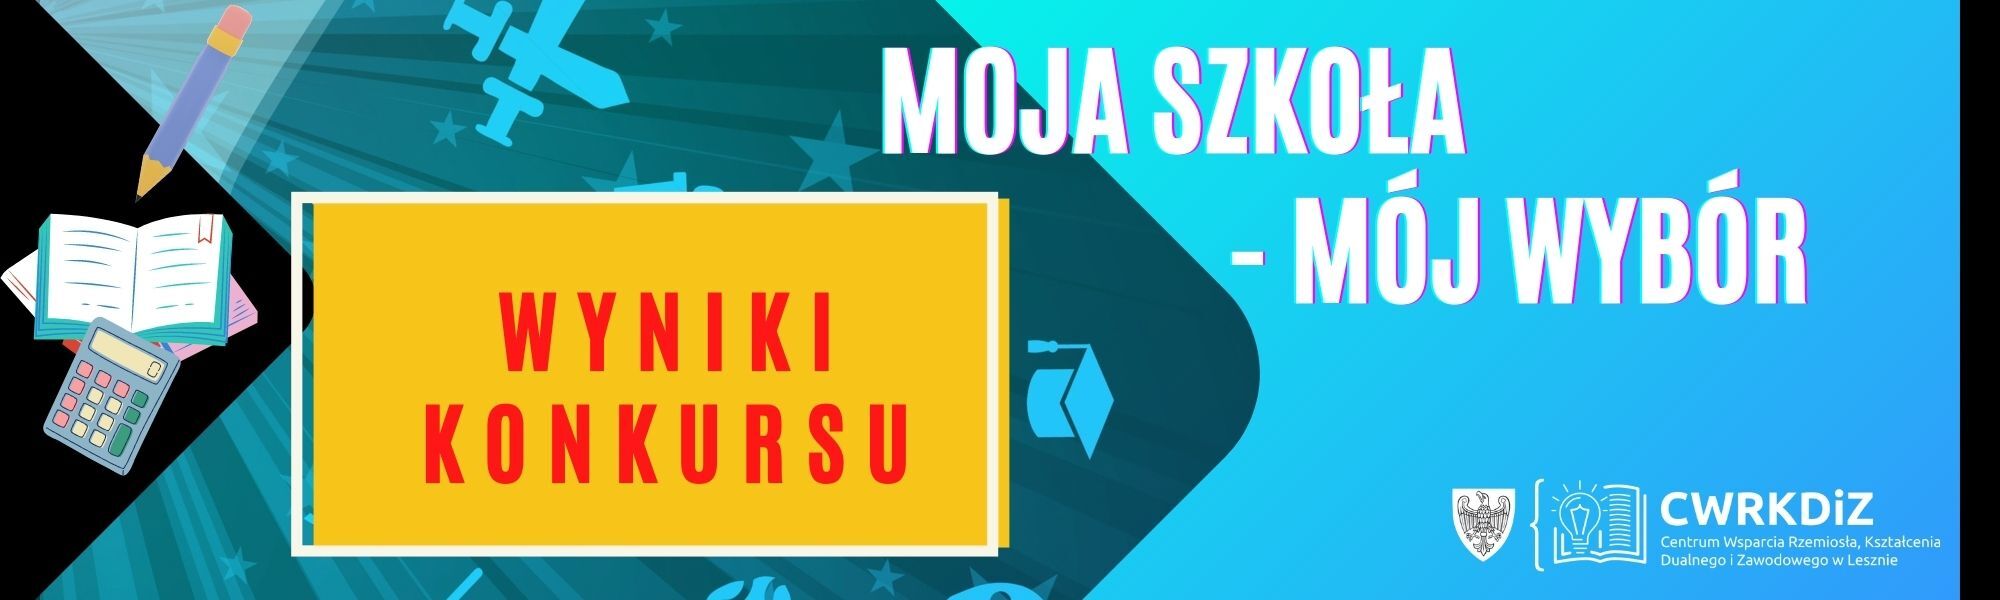 Plakat przedstawia nazwę konkursu, jego adresatów, logo CWRKDiZ w Lesznie oraz grafiki książek, ołówka, mikroskopu itp. a także duży napis "wyniki konkursu".